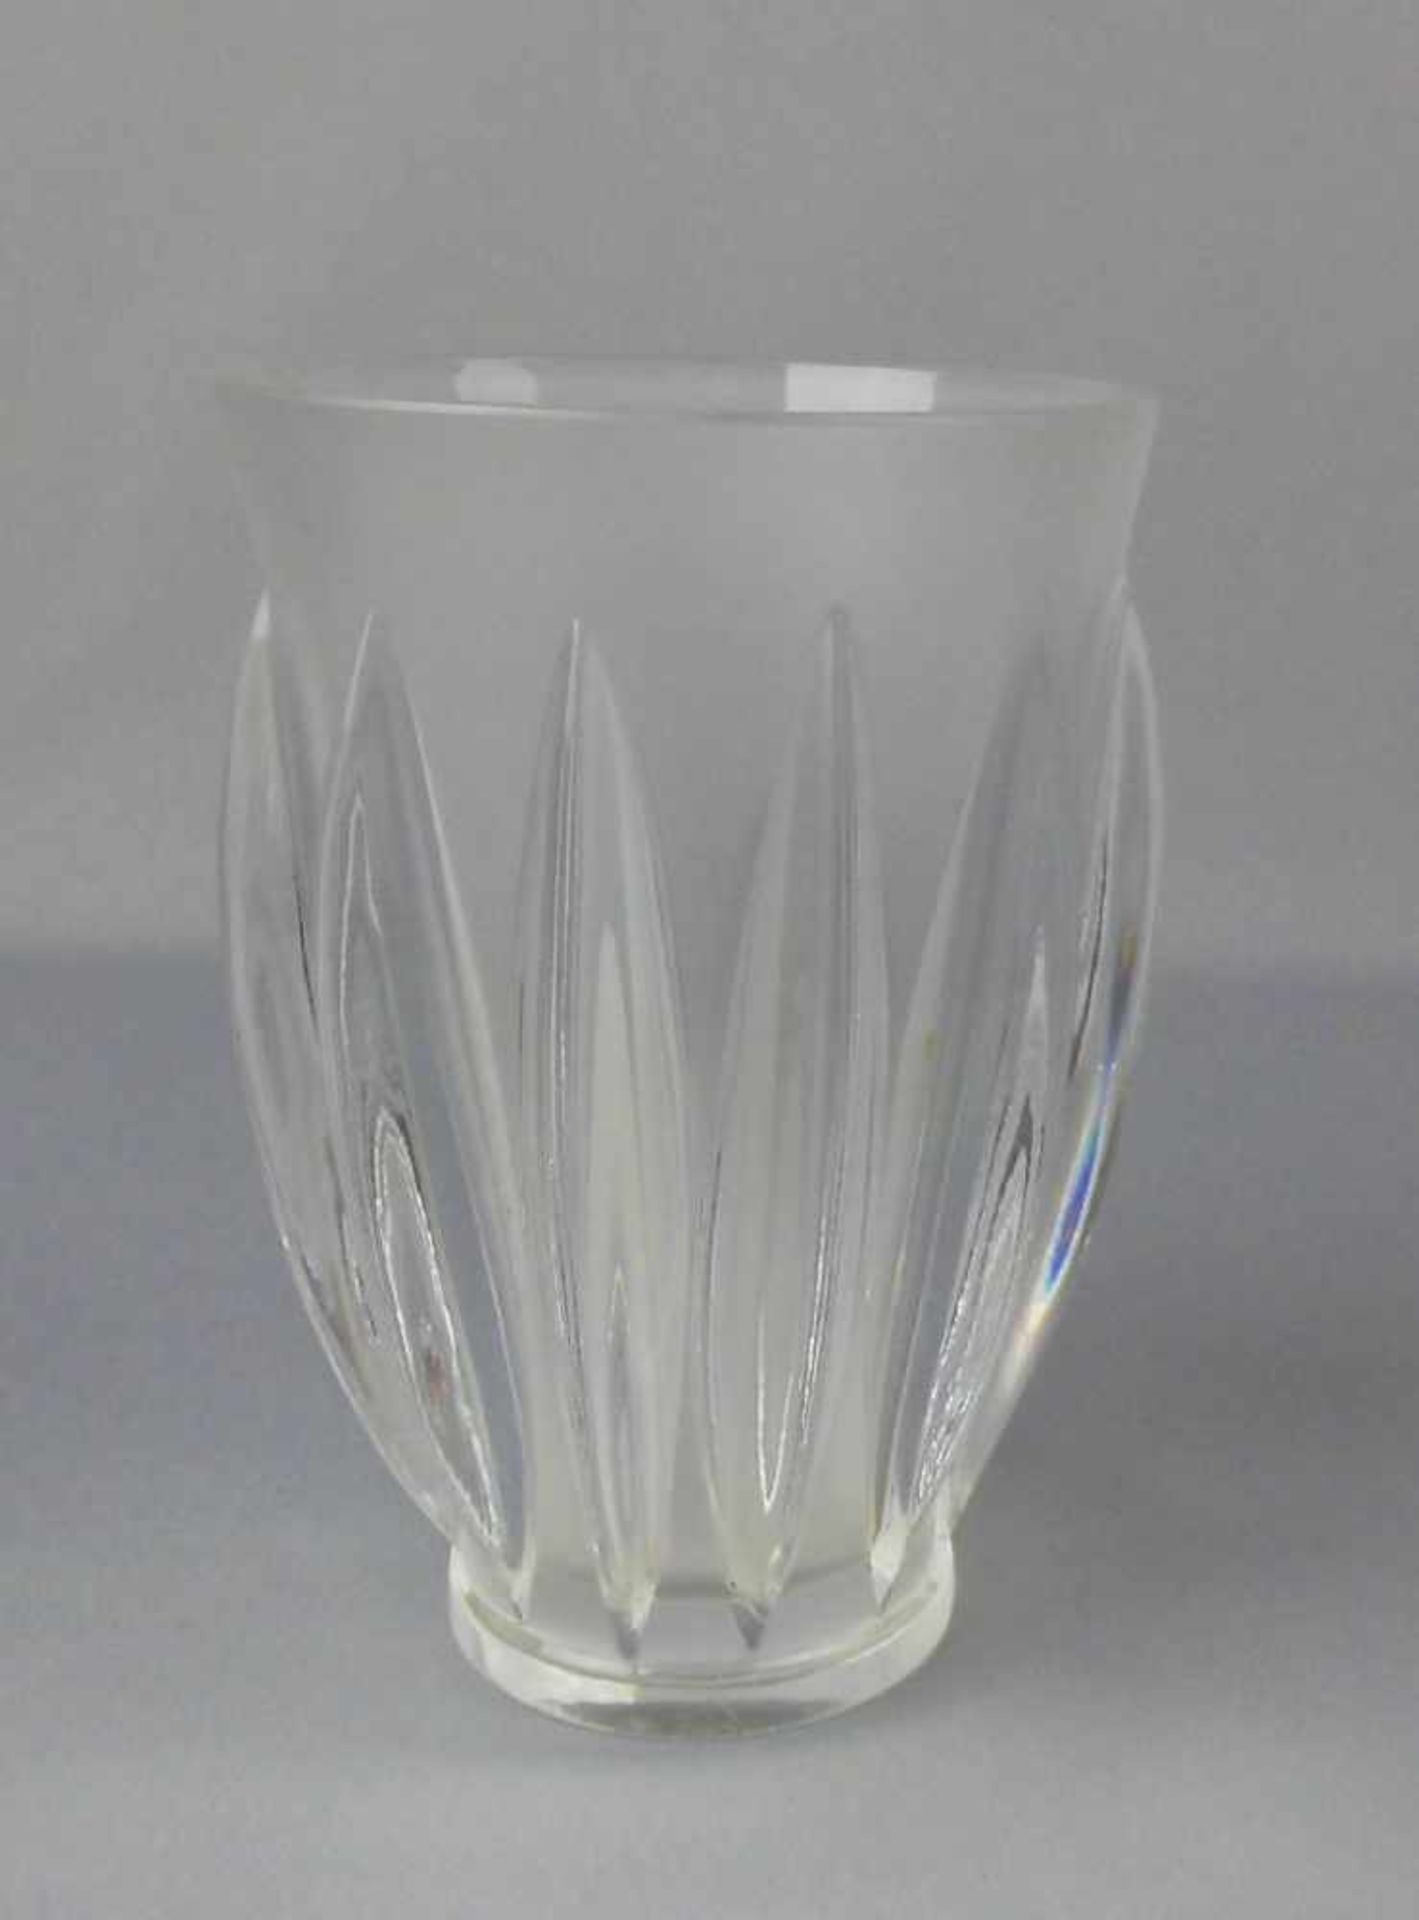 LALIQUE - VASE / glass vase, Kristallglas, partiell satiniert, unter dem Stand mit Nadelsignatur "